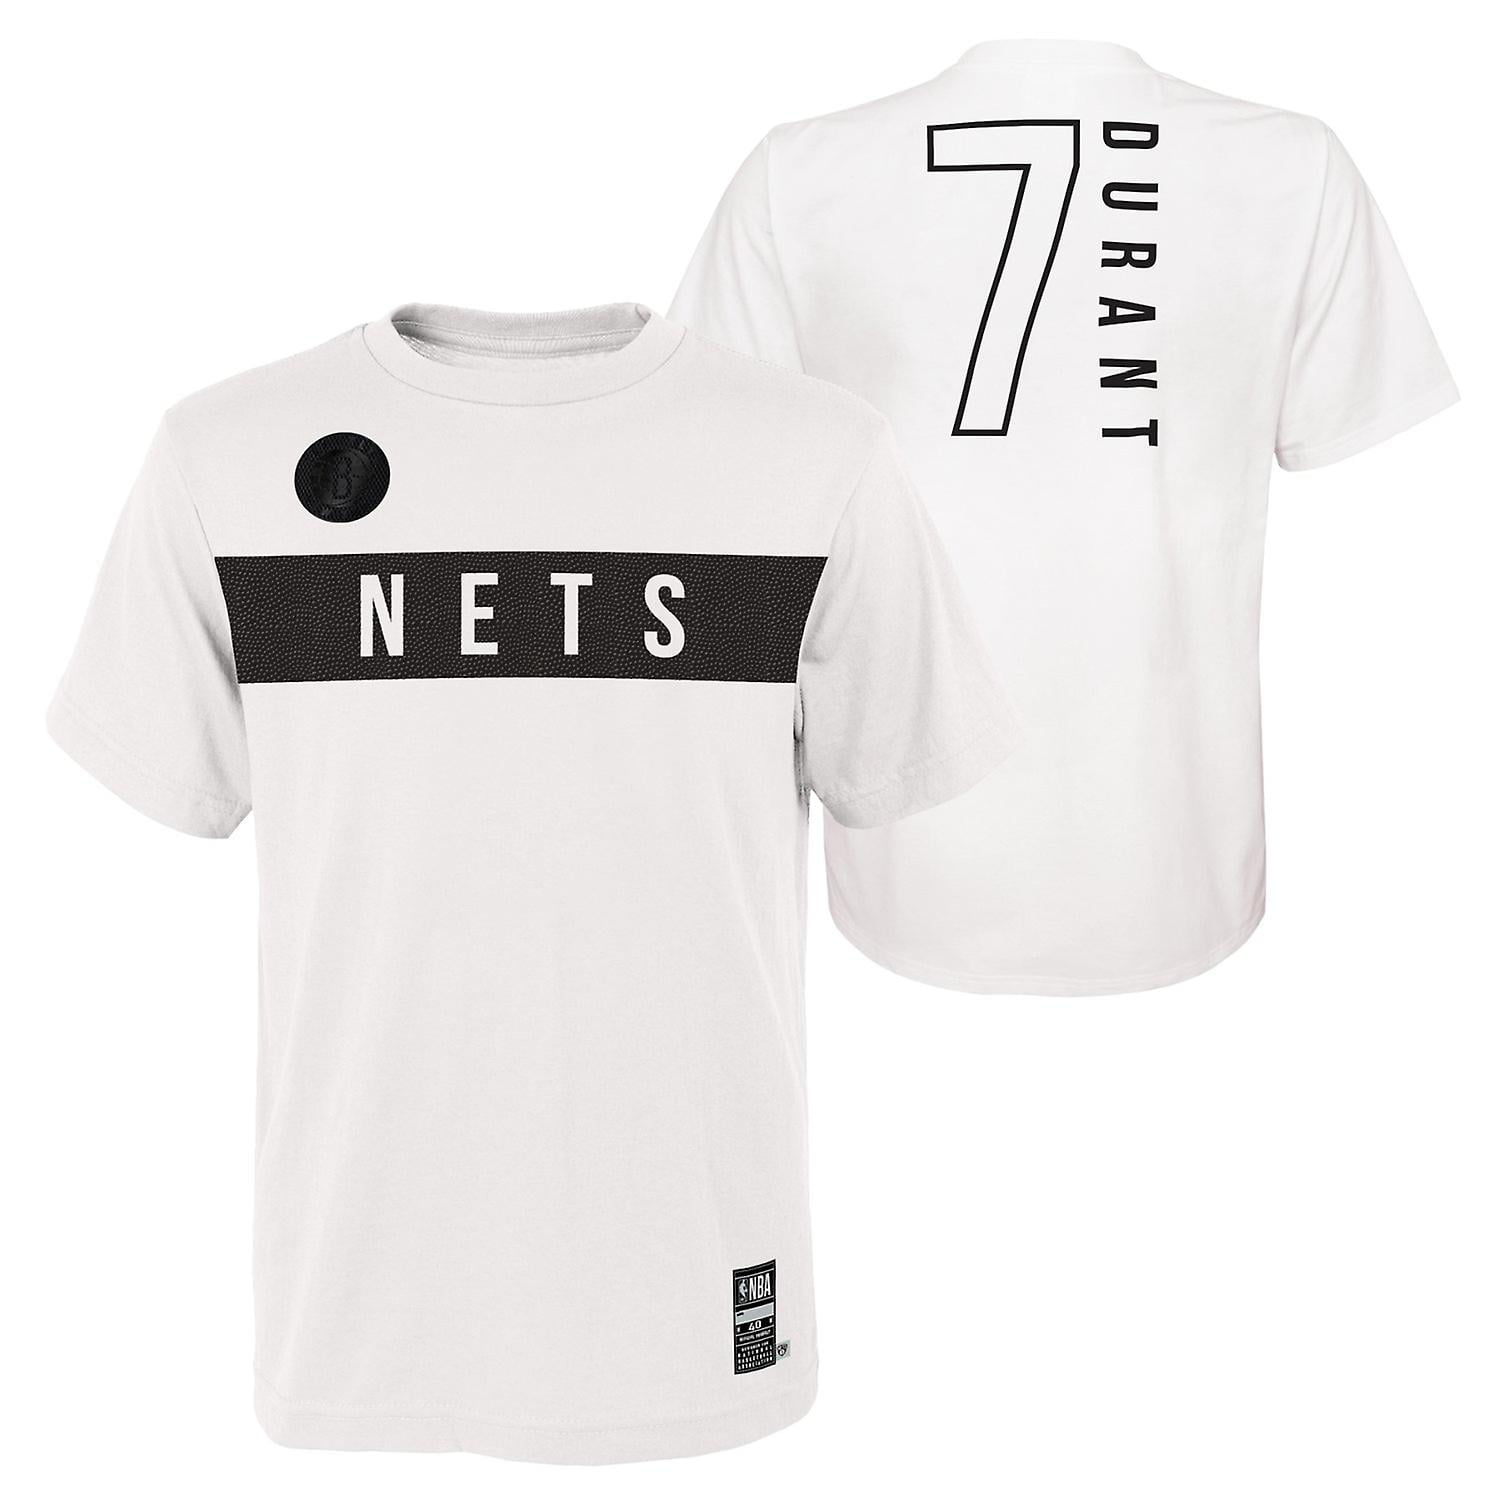 Outerstuff Brooklyn Nets T-shirt Grey